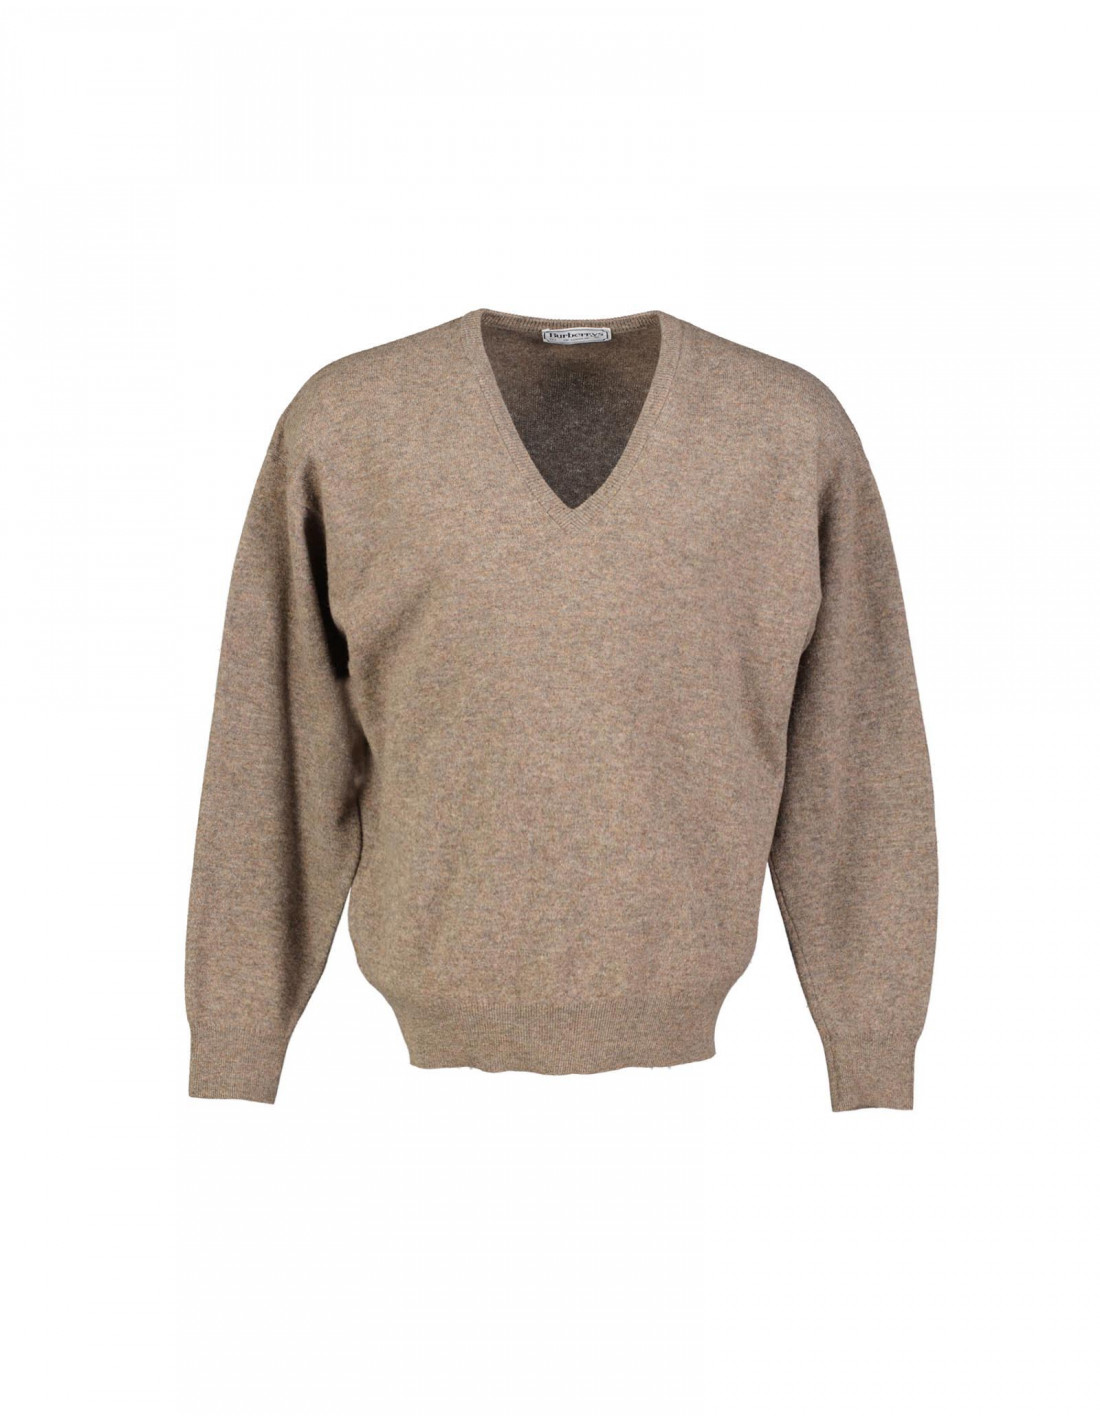 Burberrys men's V-neck sweater